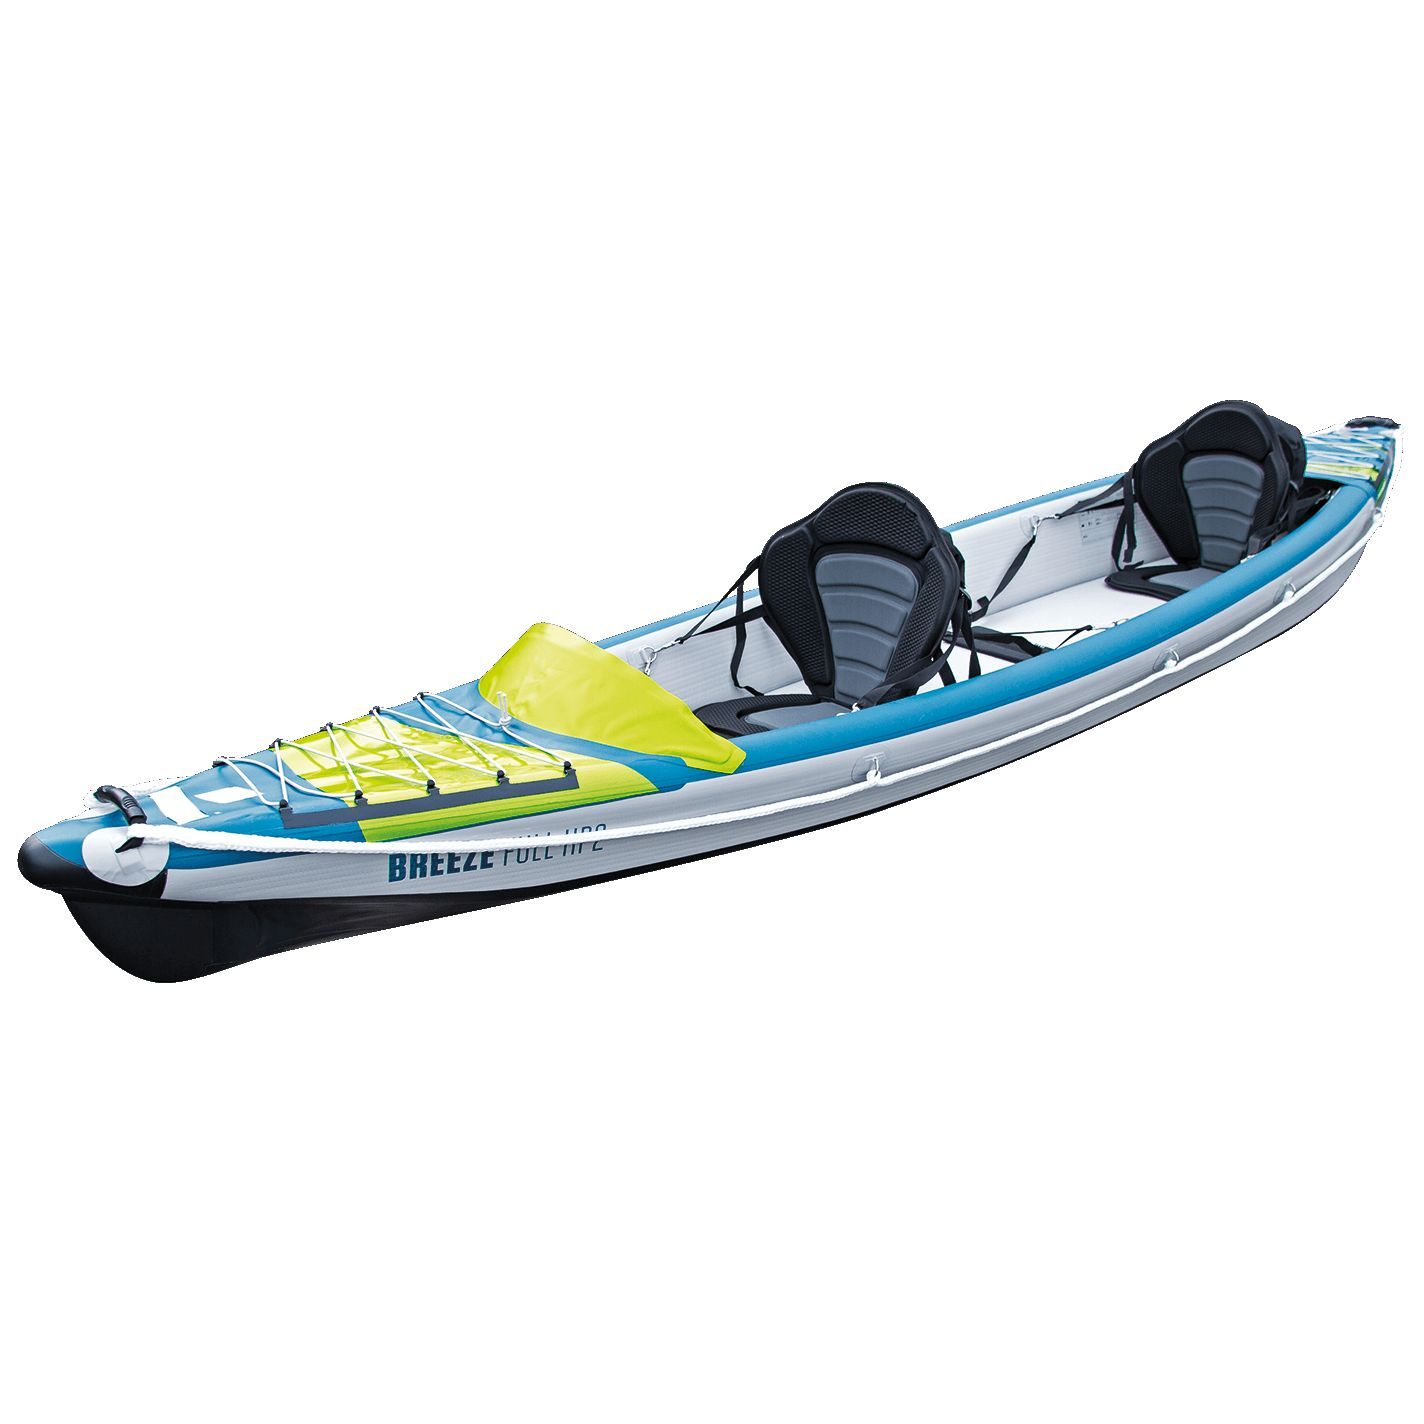 Tahe Outdoor Kayak Air Breeze Full Hp2 - Opblaasbare kajak